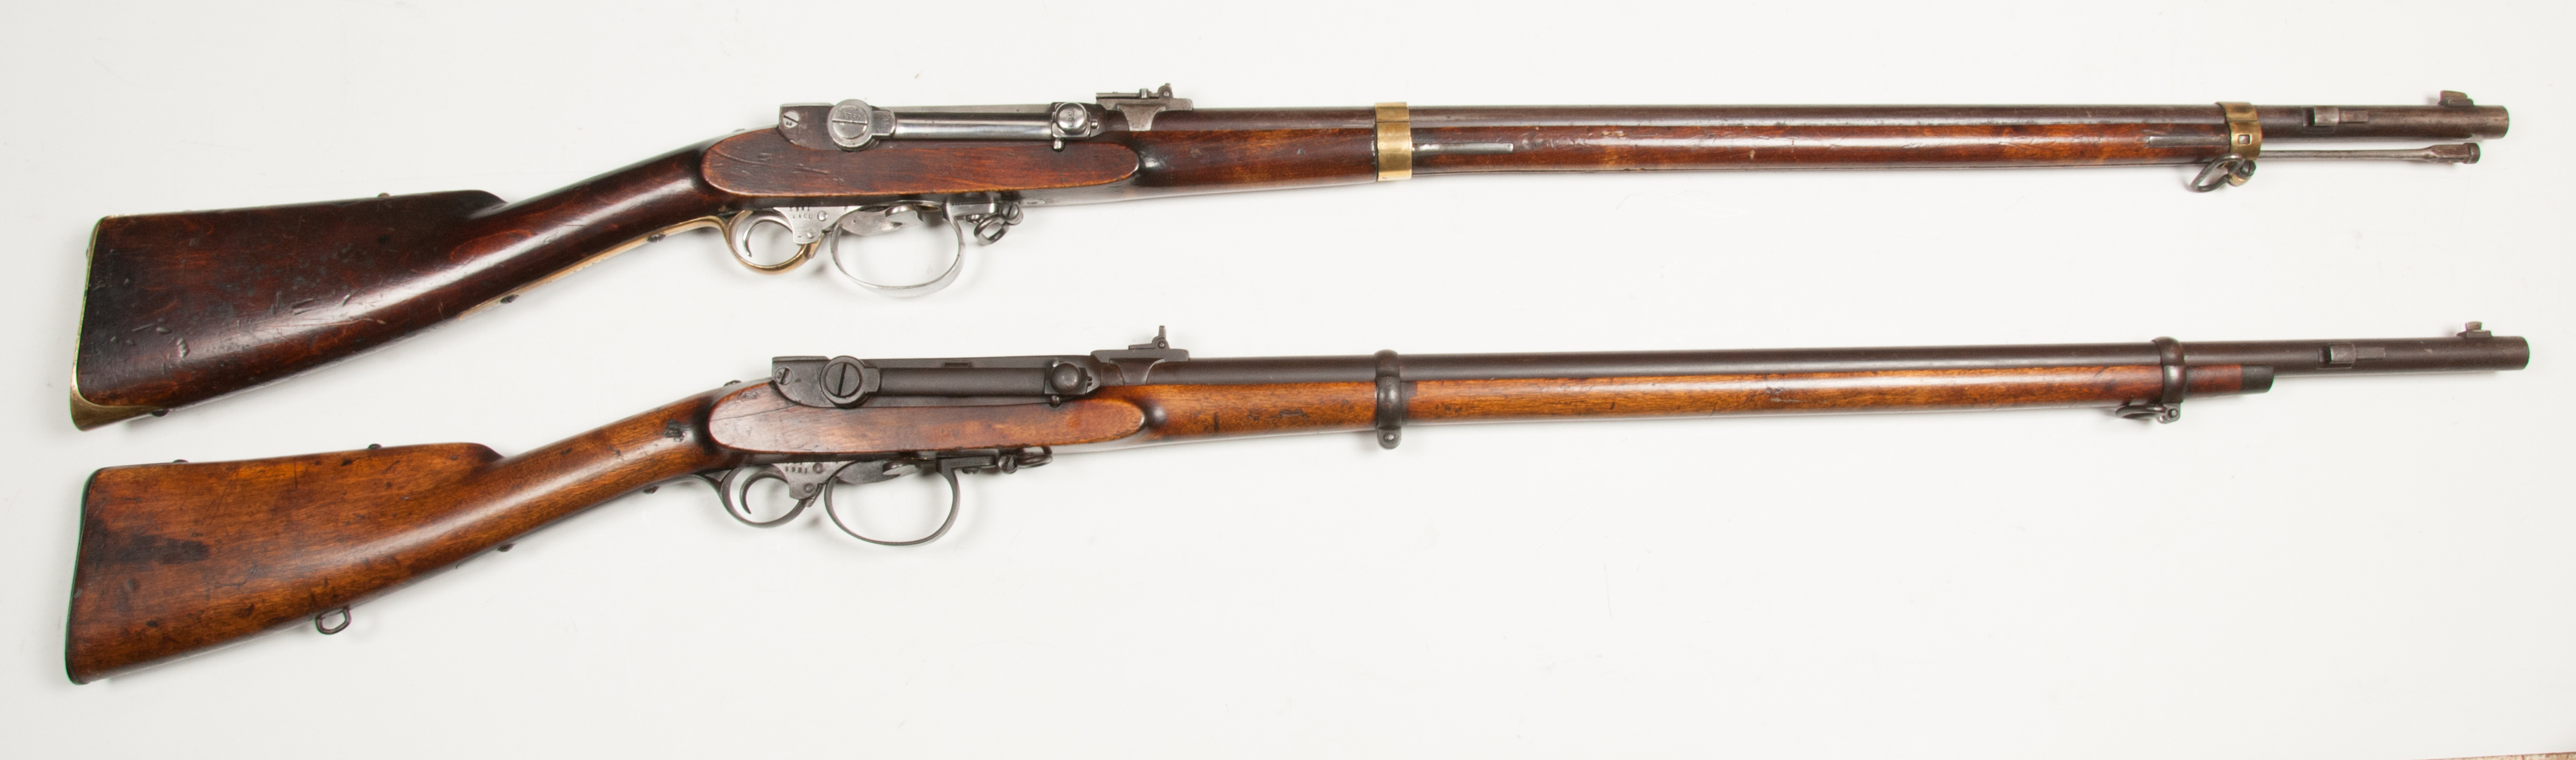 ./guns/rifle/bilder/Rifle-Kongsberg-Kammerlader-M1860-Kort-154-1861-Skytterlag-3.jpg